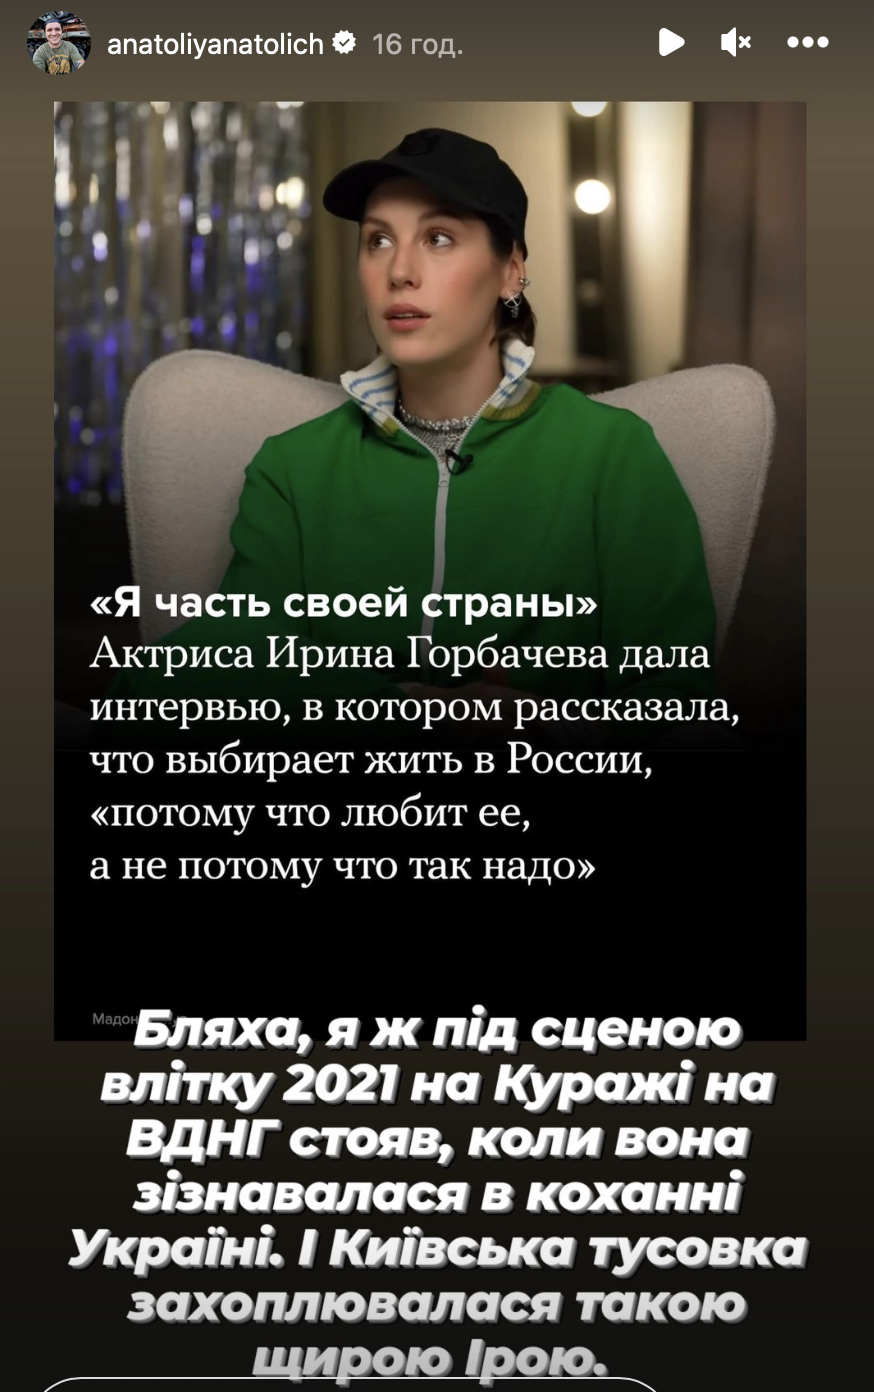 У 2021 році зізнавалася Україні в коханні: виплив цікавий факт про акторку Ірину Горбачову, яка підтримала Росію і війну